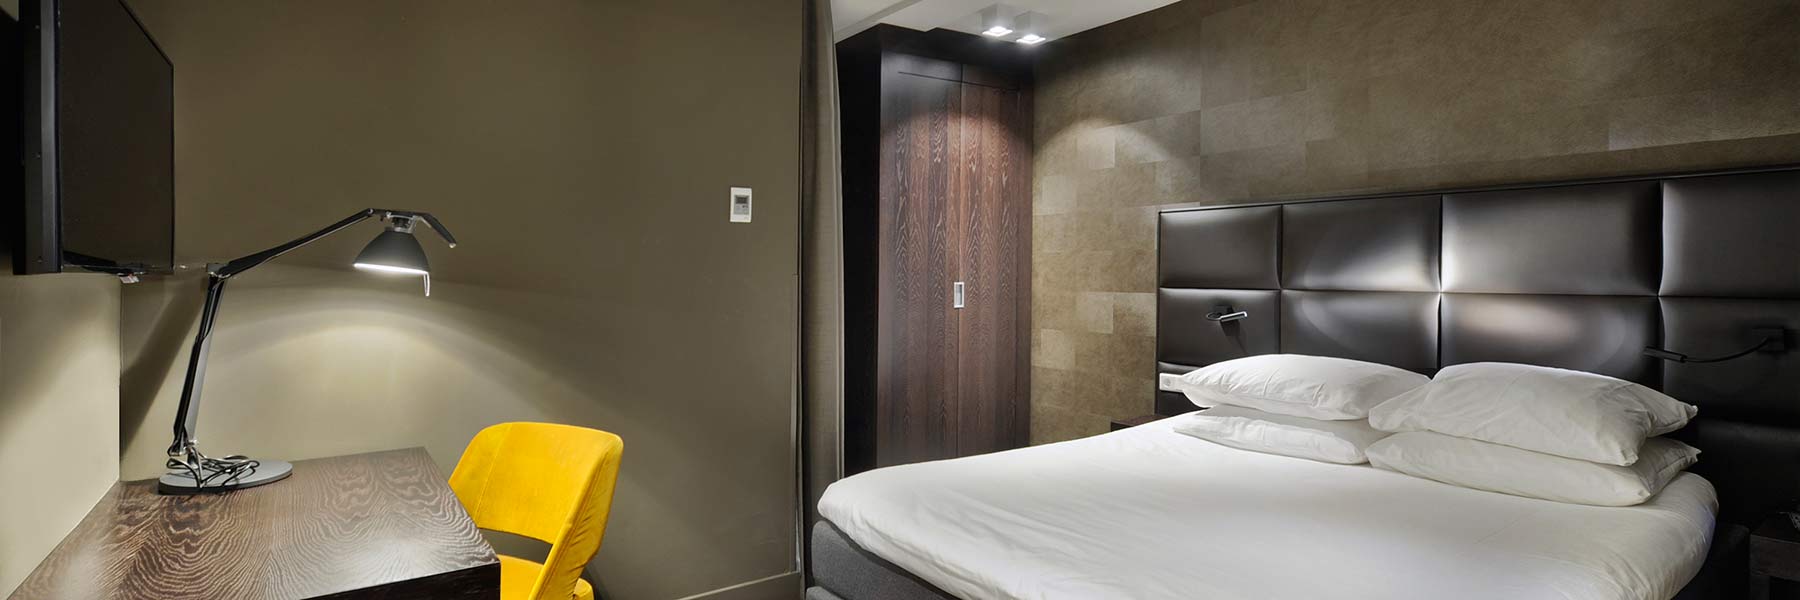 Camera doppia piccola (letto matrimoniale) Amsterdam Forest Hotel 